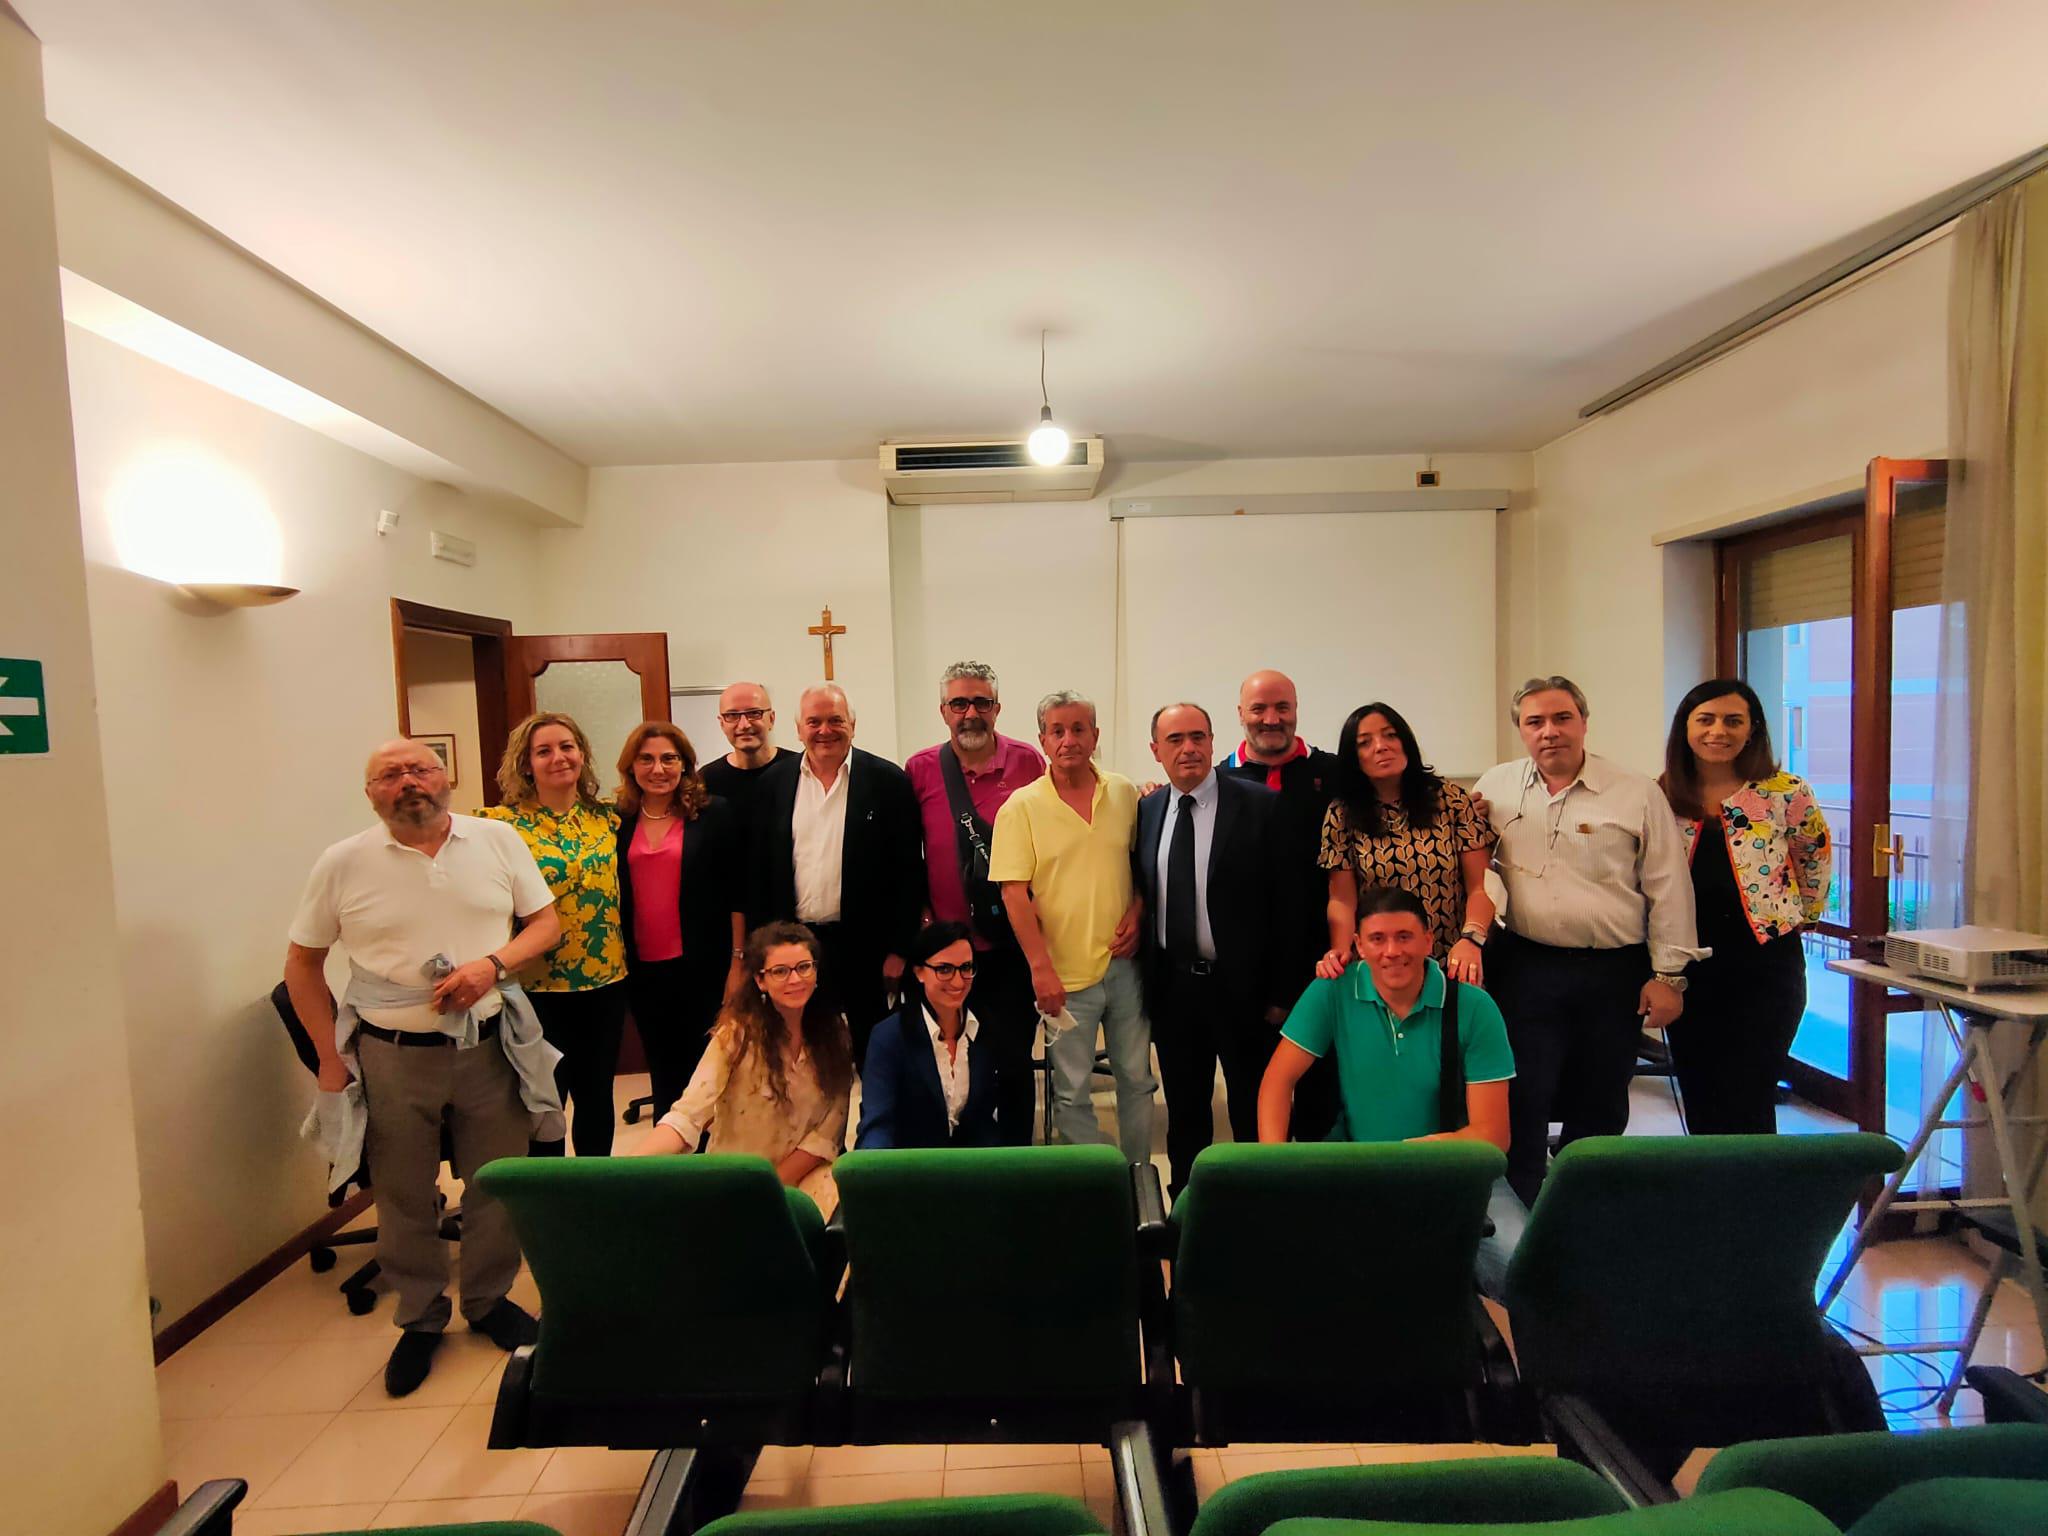 Benevento|Insediato il nuovo Consiglio dell’Ordine degli Ingegneri